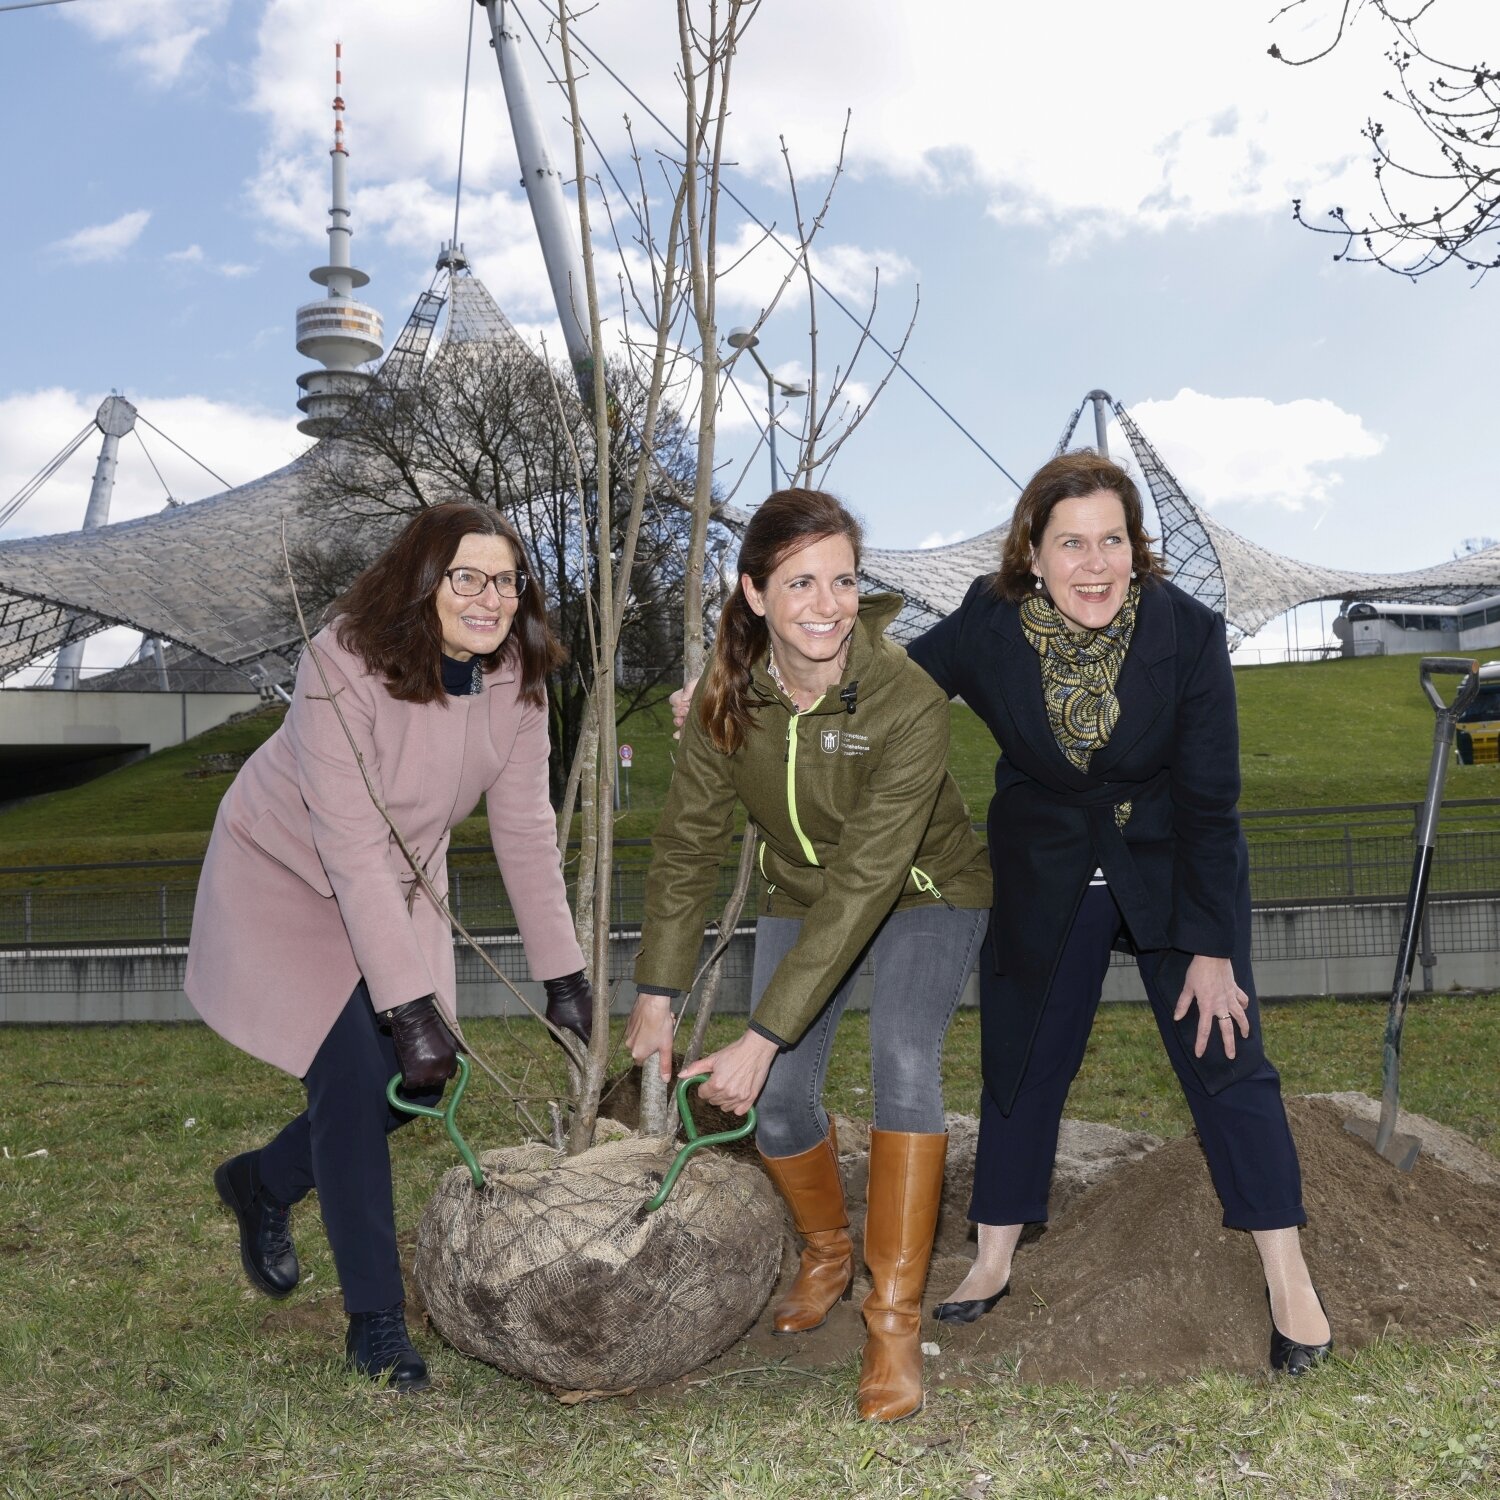 25 Bäume für den Olympiapark – 500.000 Bäume für München